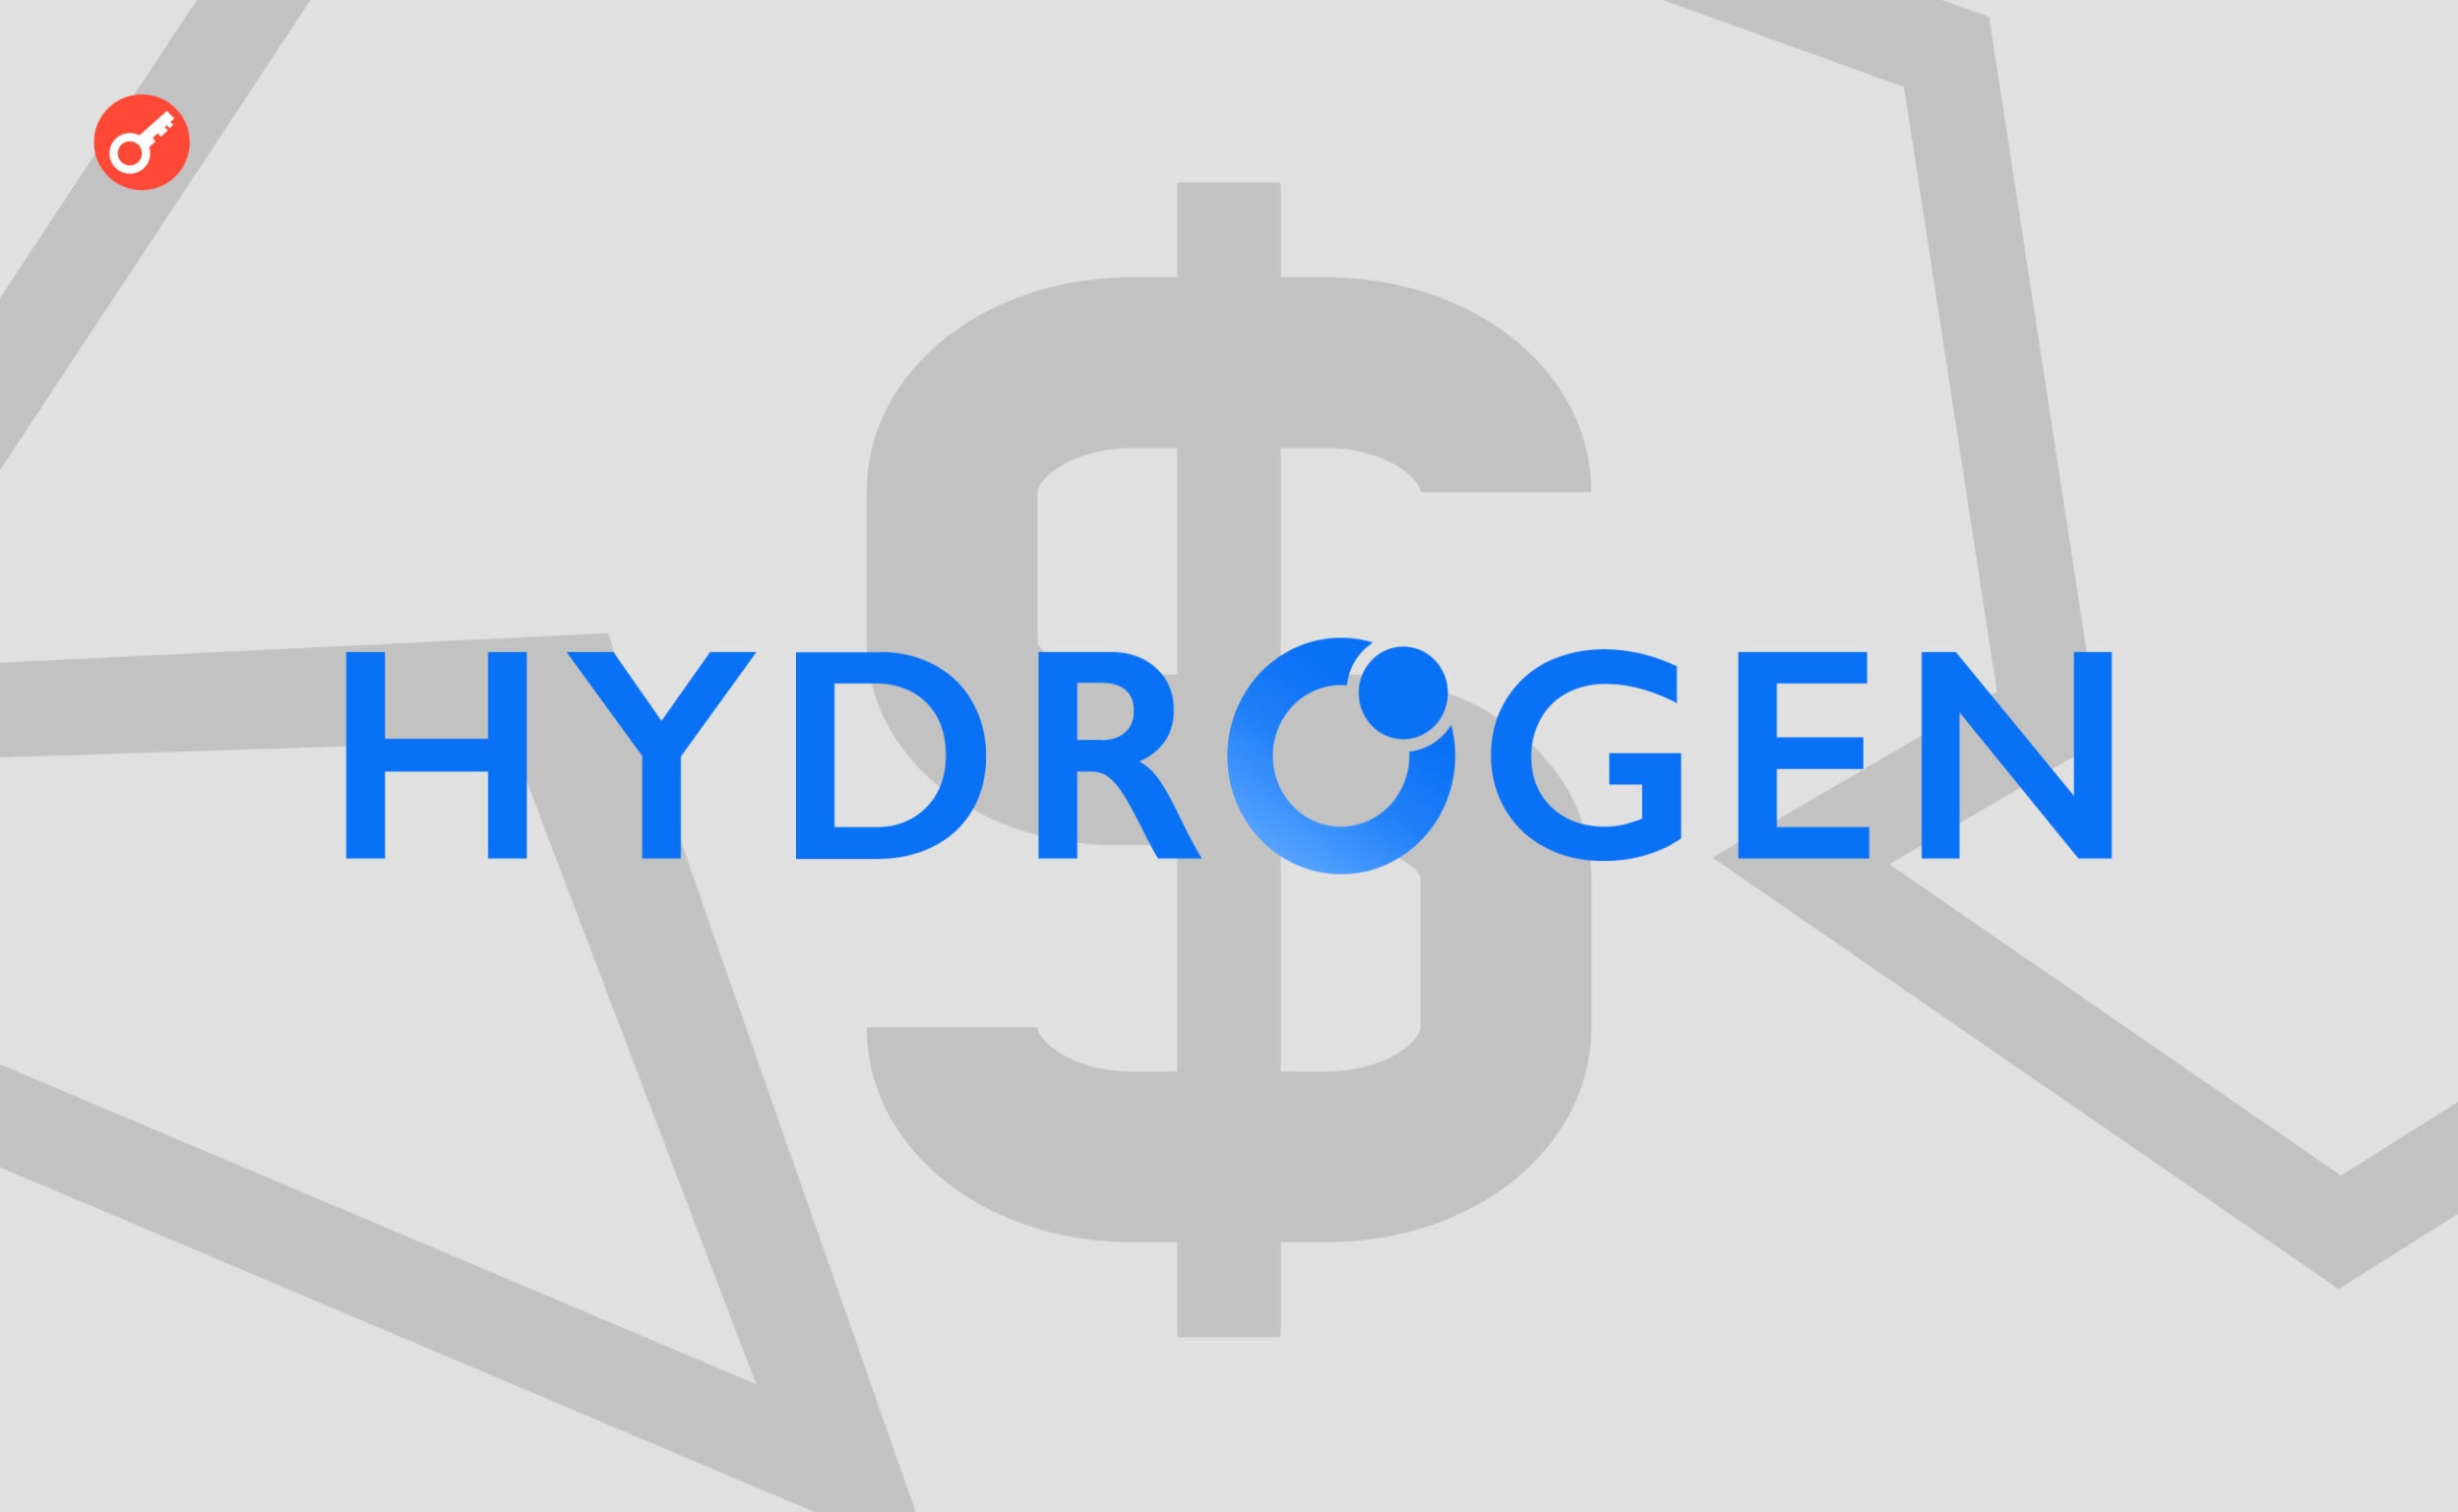 США присудили криптопроєкту Hydrogen виплатити $2,5 млн. Головний колаж новини.